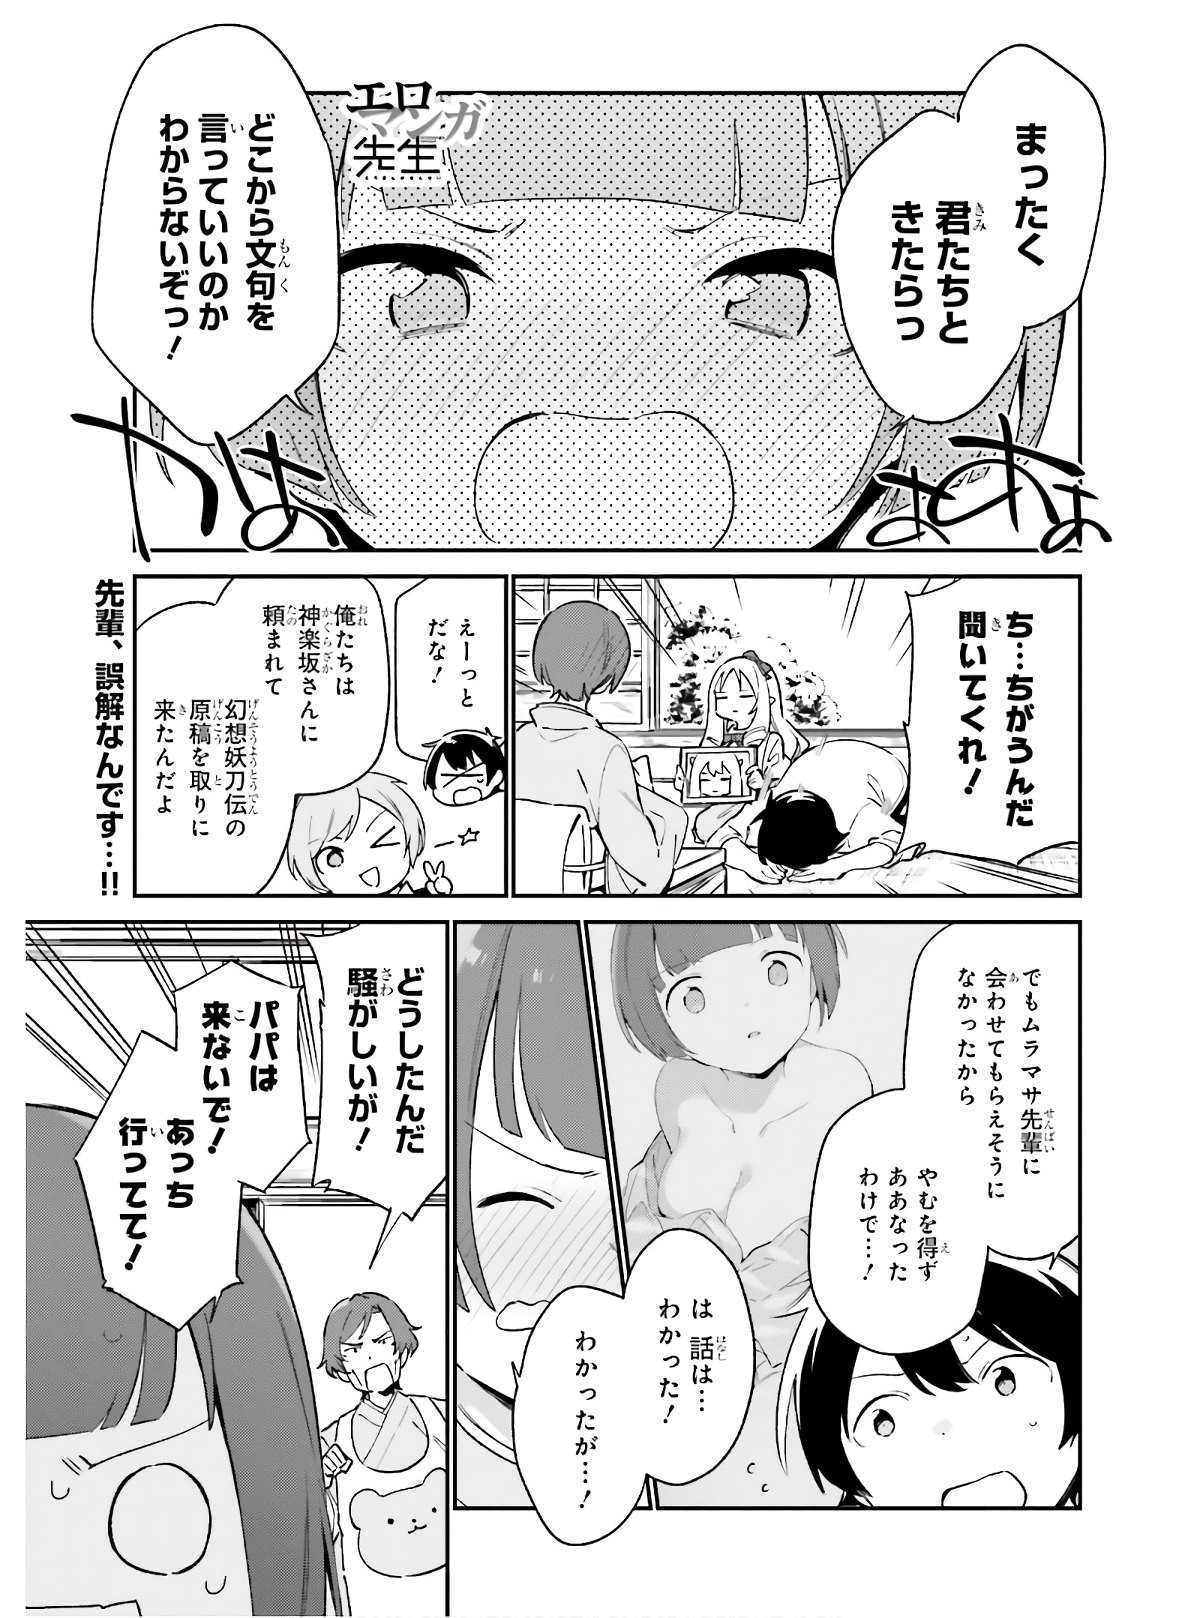 Ero Manga Sensei - Chapter 69 - Page 2